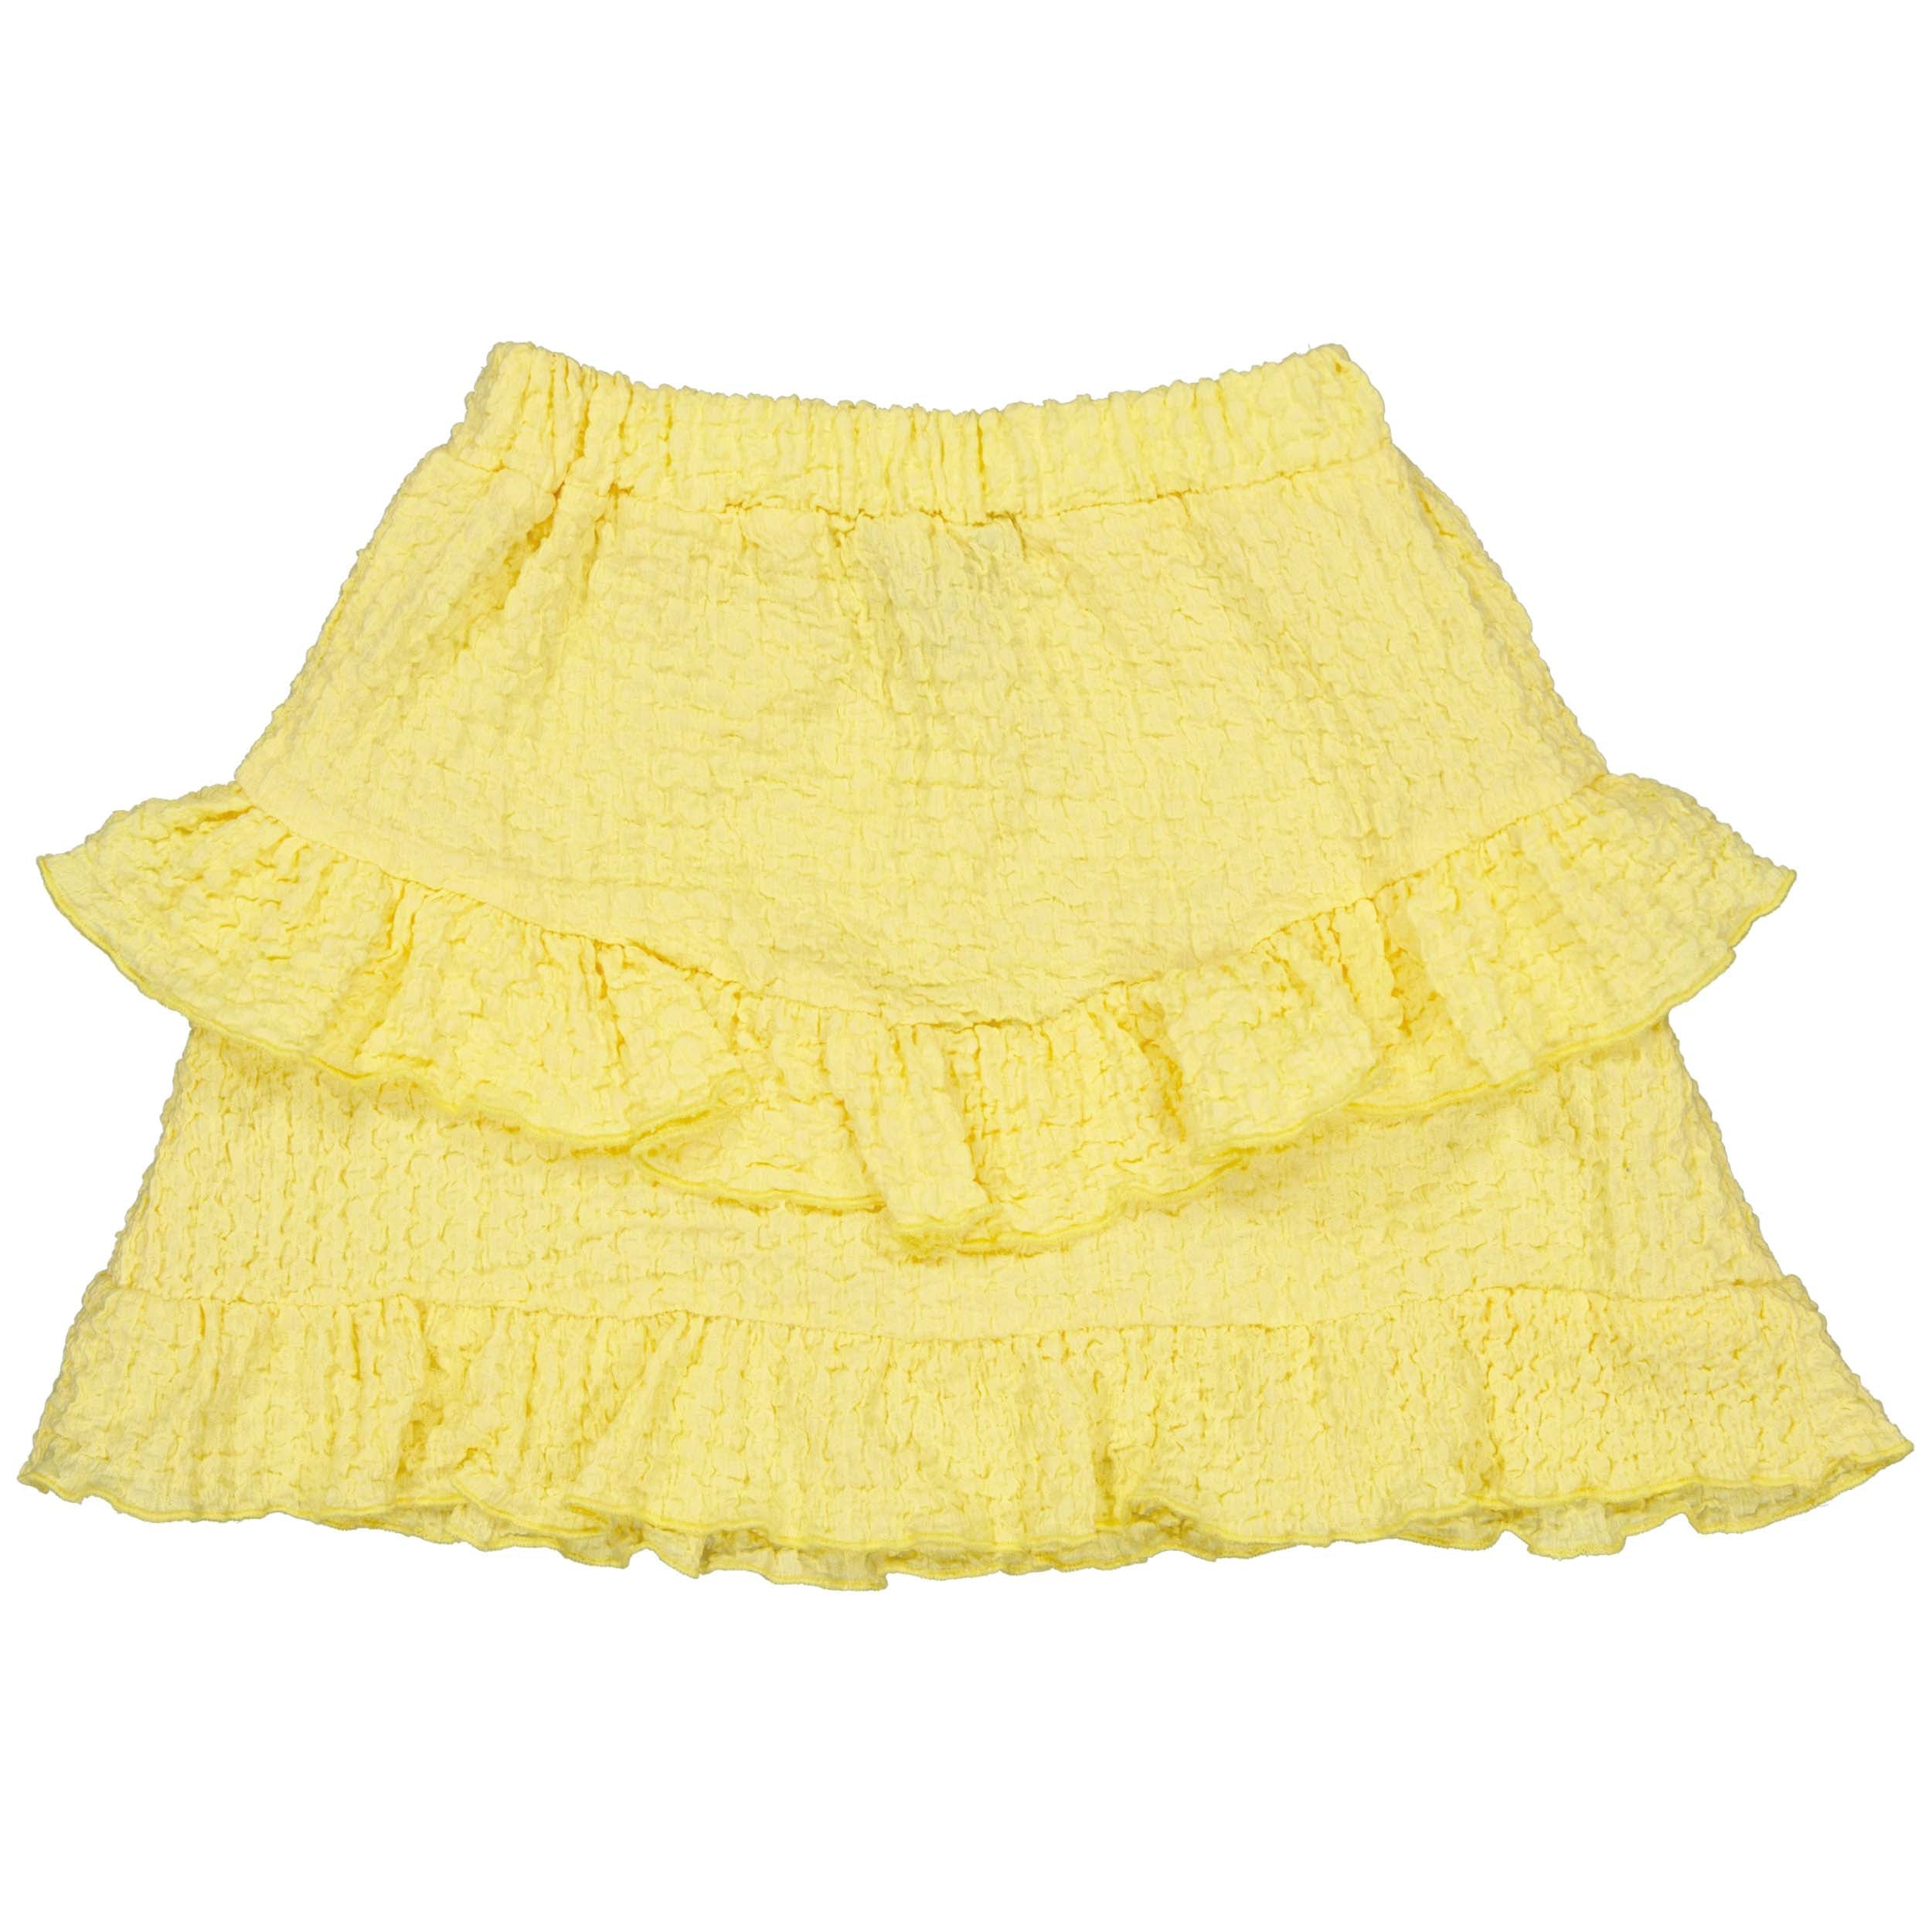 Meisjes Skirt BRICKQS243 van Quapi in de kleur Soft Yellow in maat 122-128.